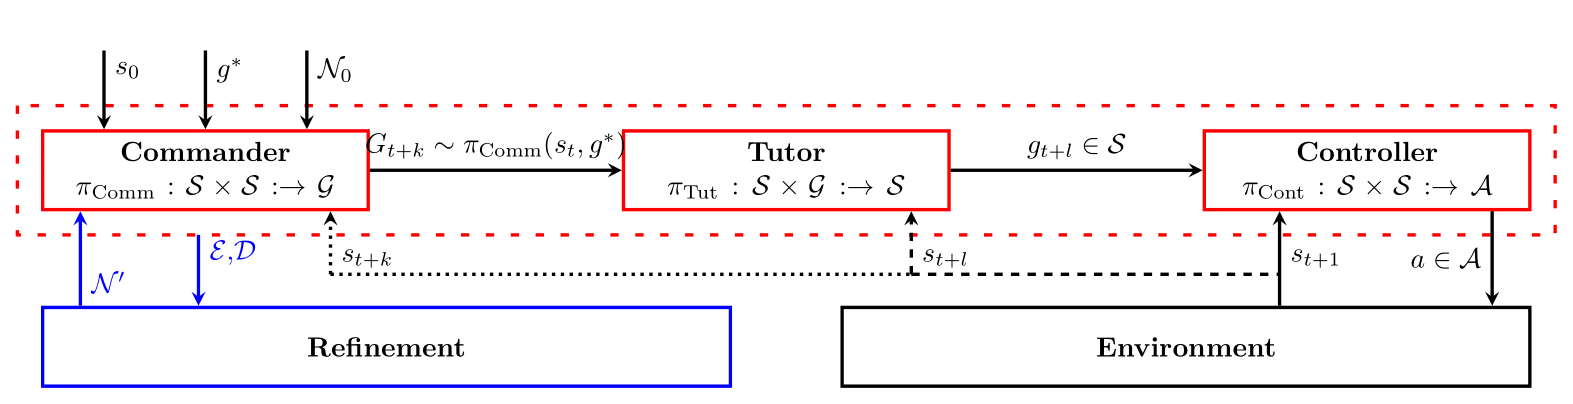 STAR algorithm schematic